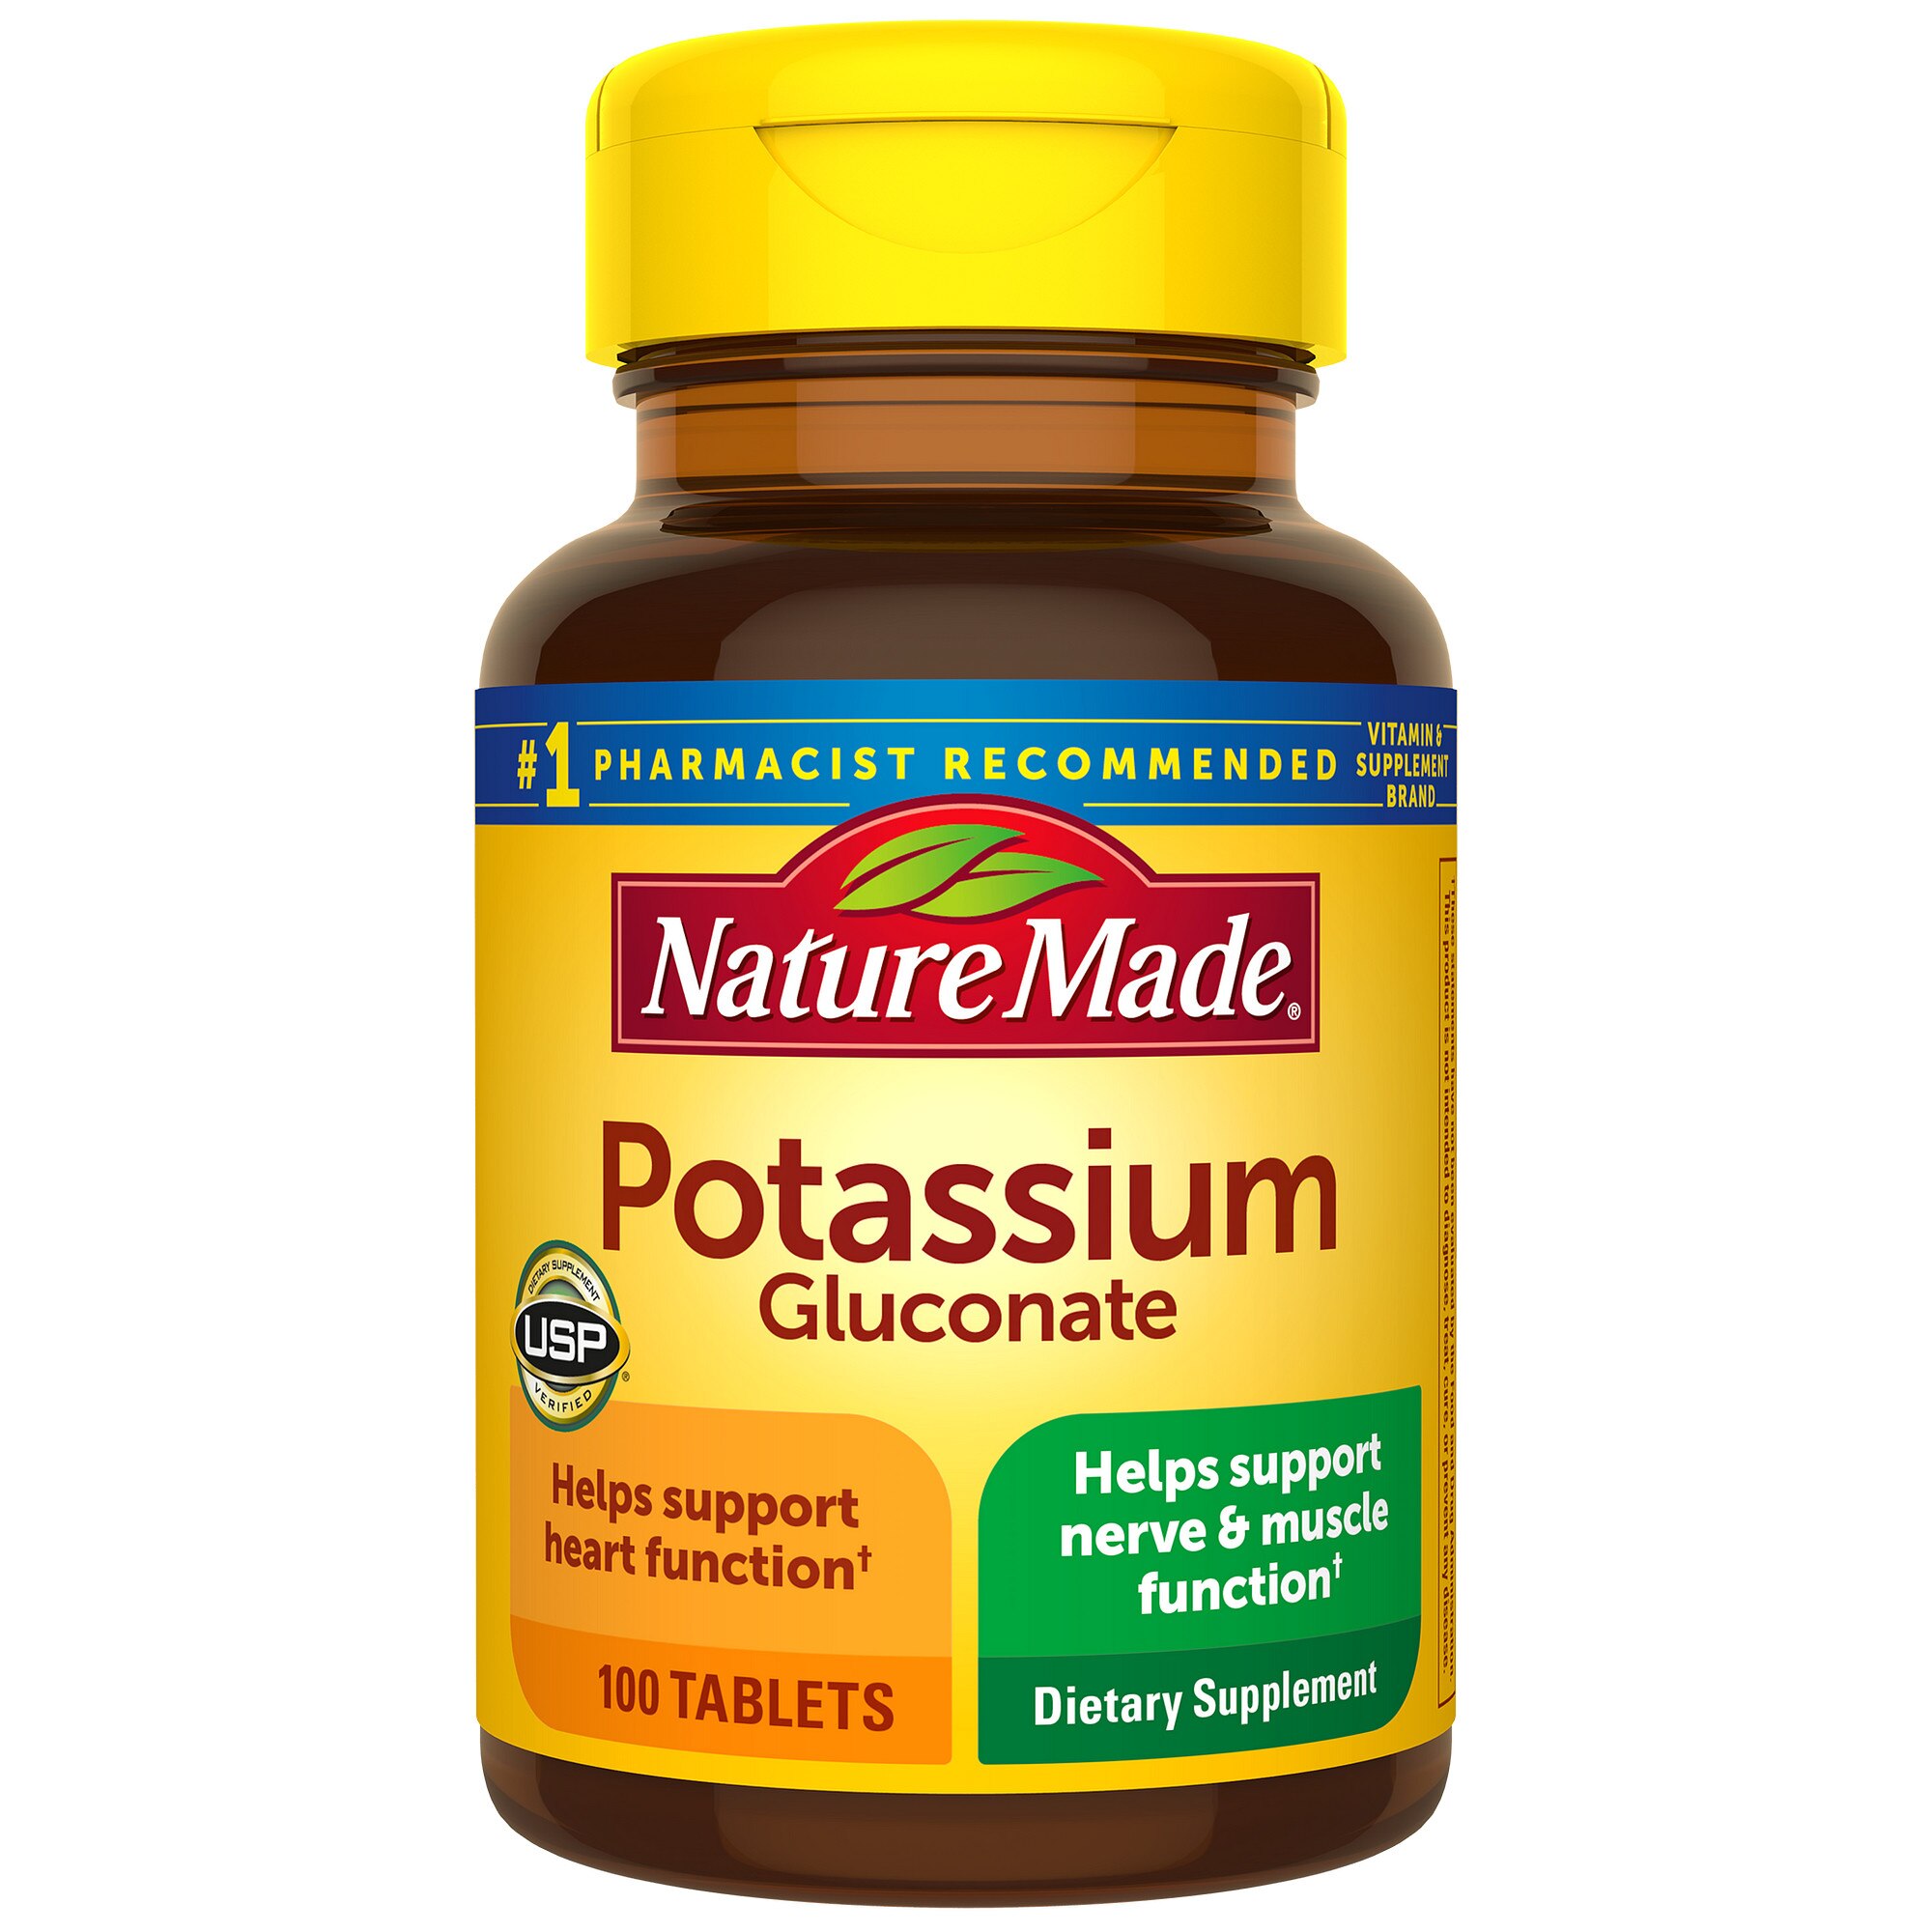 What is potassium gluconate?